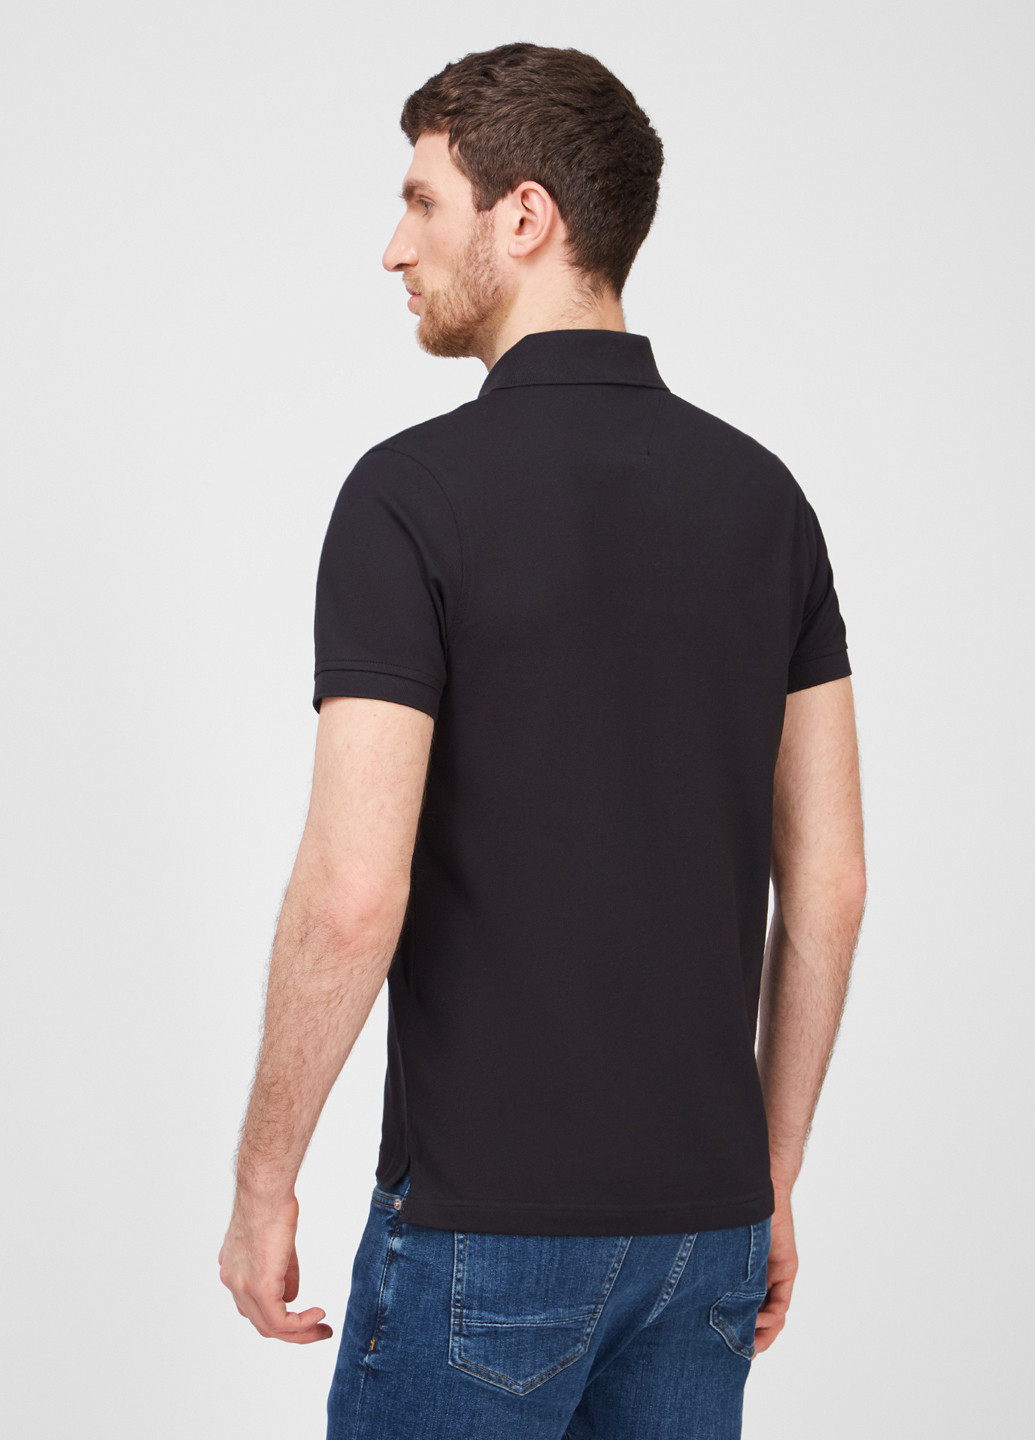 Черная футболка-поло для мужчин Tommy Hilfiger однотонная